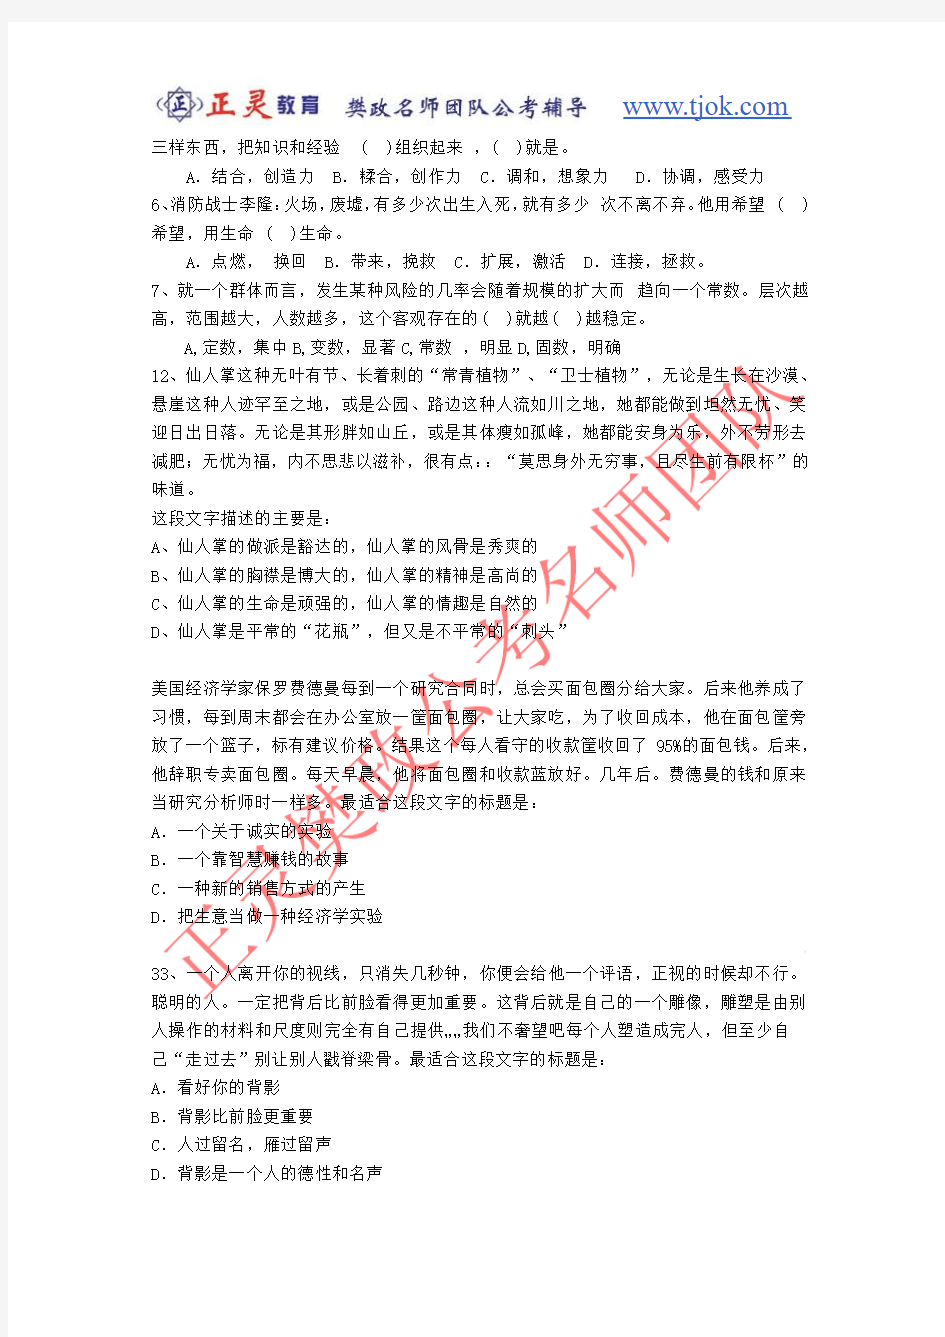 2009年山东省公务员录用考试+(真题答案分离版)   正灵 樊政名师团队